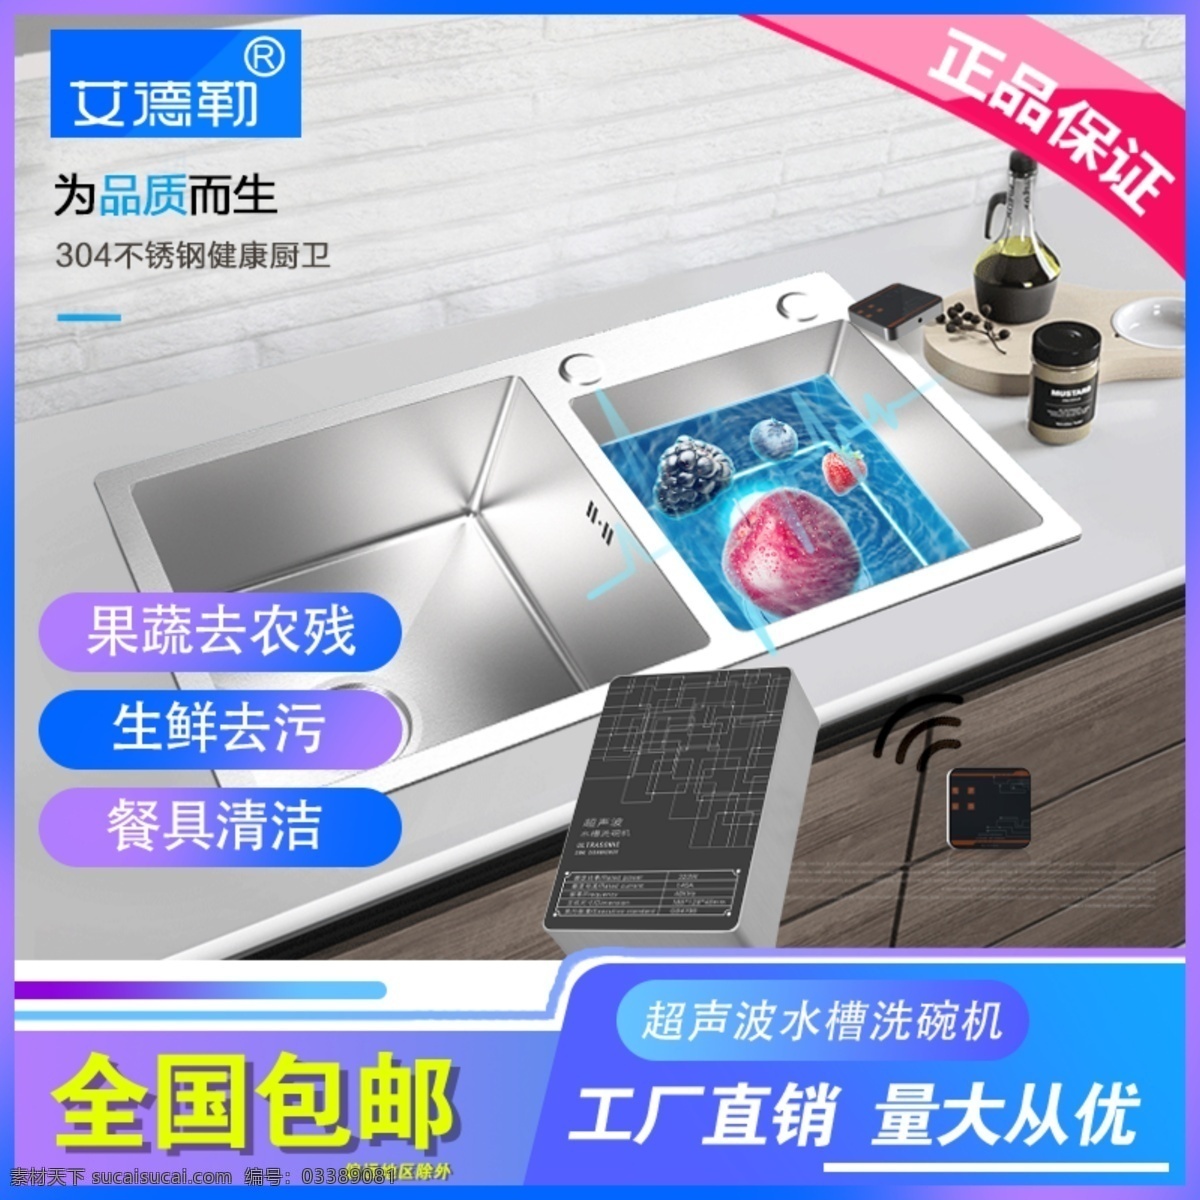 水槽主图 水槽洗碗机 水槽产品 主图 背景素材 广告词 文案素材